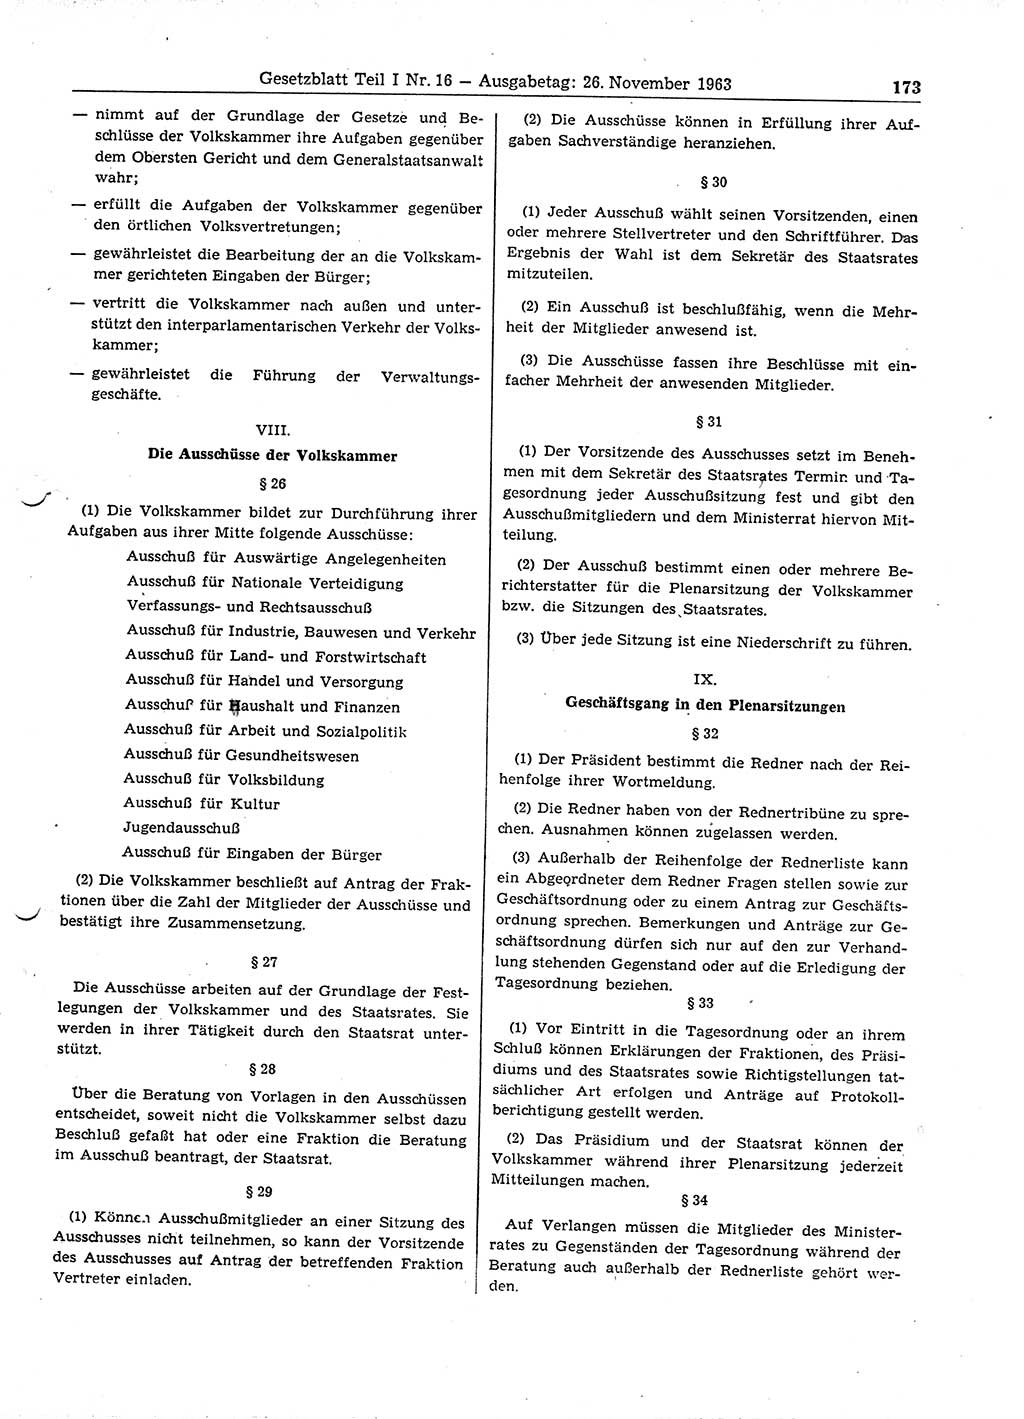 Gesetzblatt (GBl.) der Deutschen Demokratischen Republik (DDR) Teil Ⅰ 1963, Seite 173 (GBl. DDR Ⅰ 1963, S. 173)